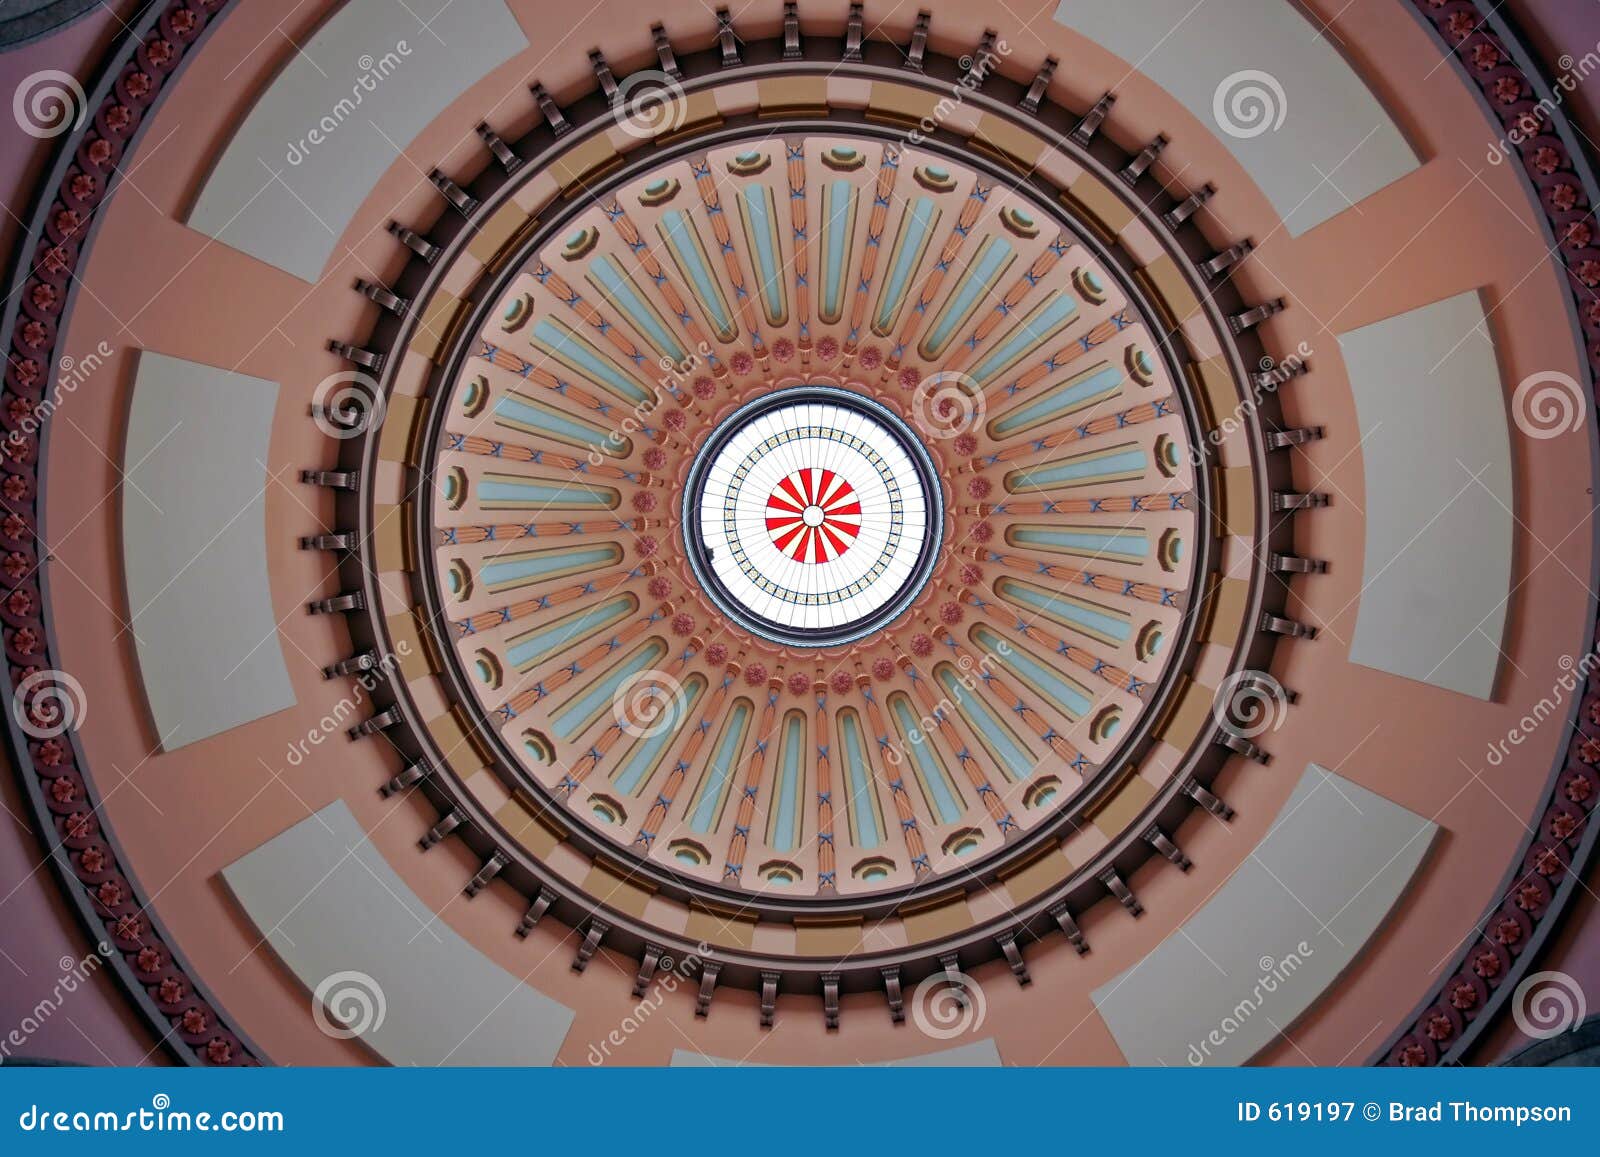 colorful ohio statehouse rotunda dome